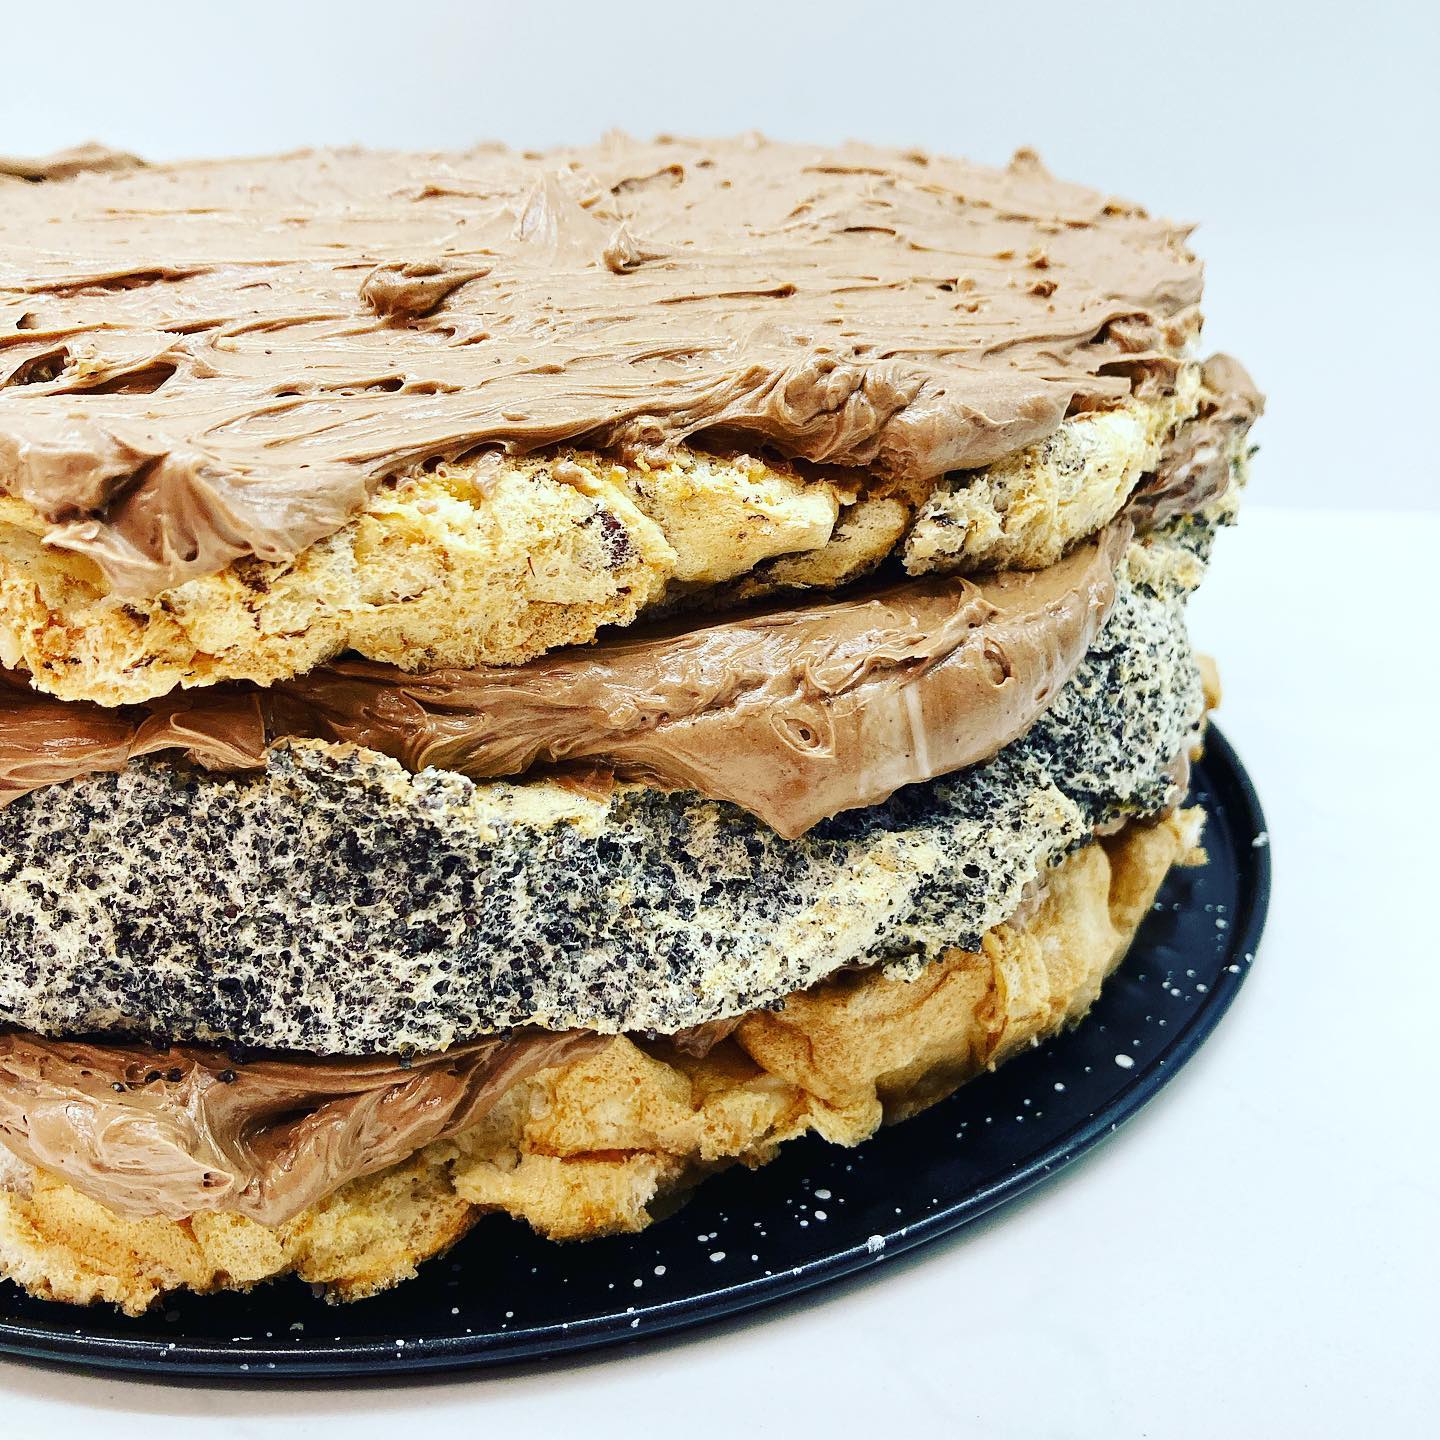 Będzie tort 😃
Blaty z białek i maku/migdałów/orzechów laskowych. 
Całość przełożona maślanym kremem czekoladowym 😍 
Przepyszny tort makaronikowy zagości jutro na stole.
Czeka jeszcze na wykończenie 😉

#przepisy_bullio #foodblogger #blogerkakulinarna #ciasto #tort #ciastozkremem #yummy #ciasta #pyszne